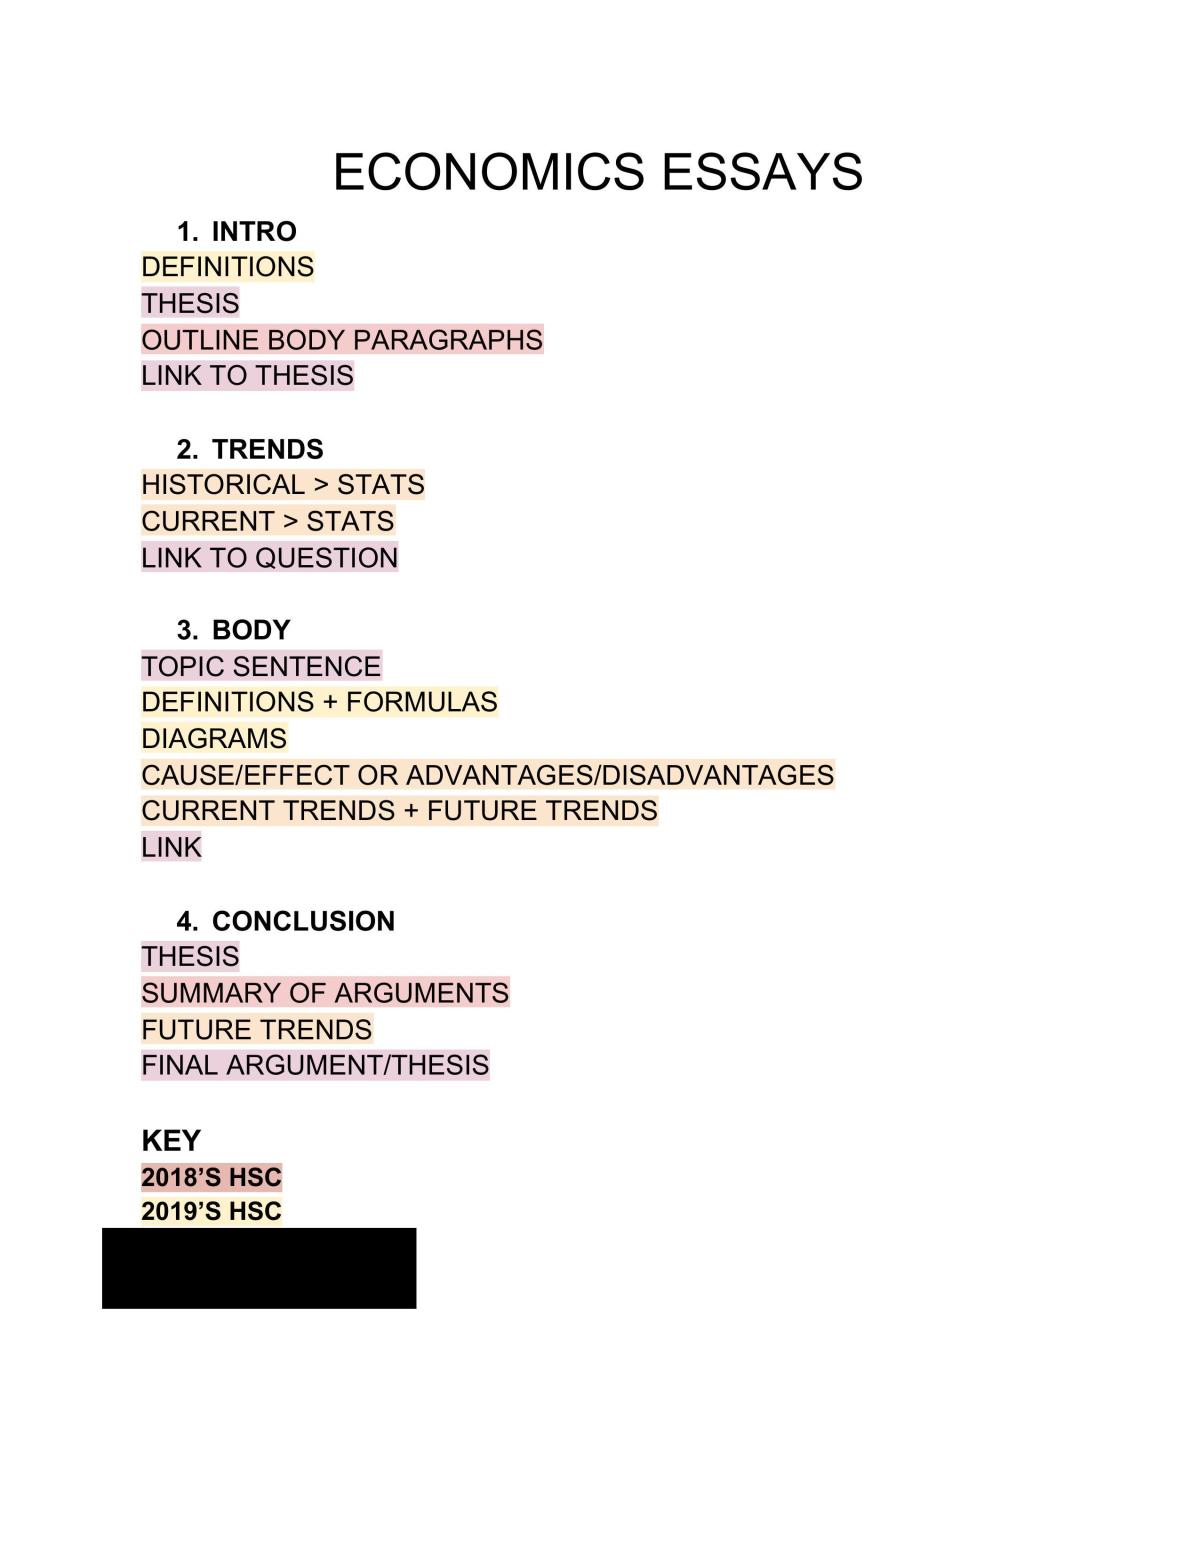 how long should a hsc economics essay be